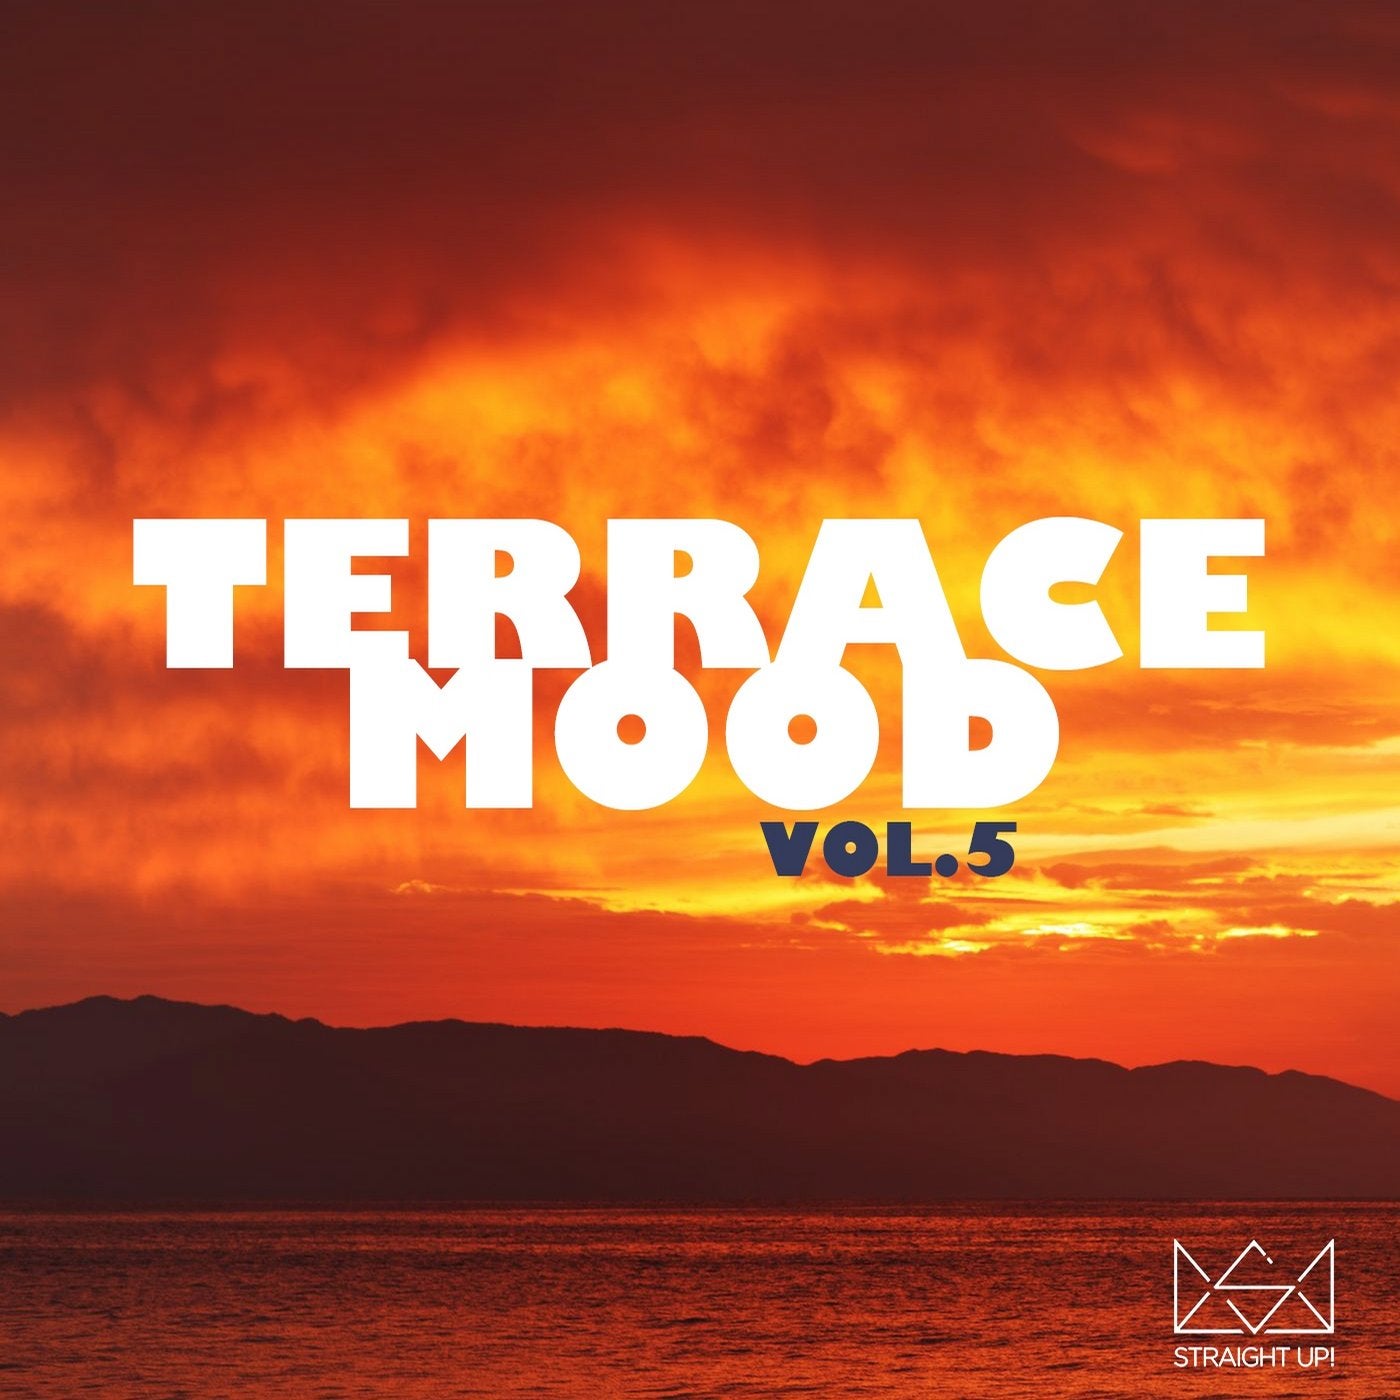 Terrace Mood Vol. 5